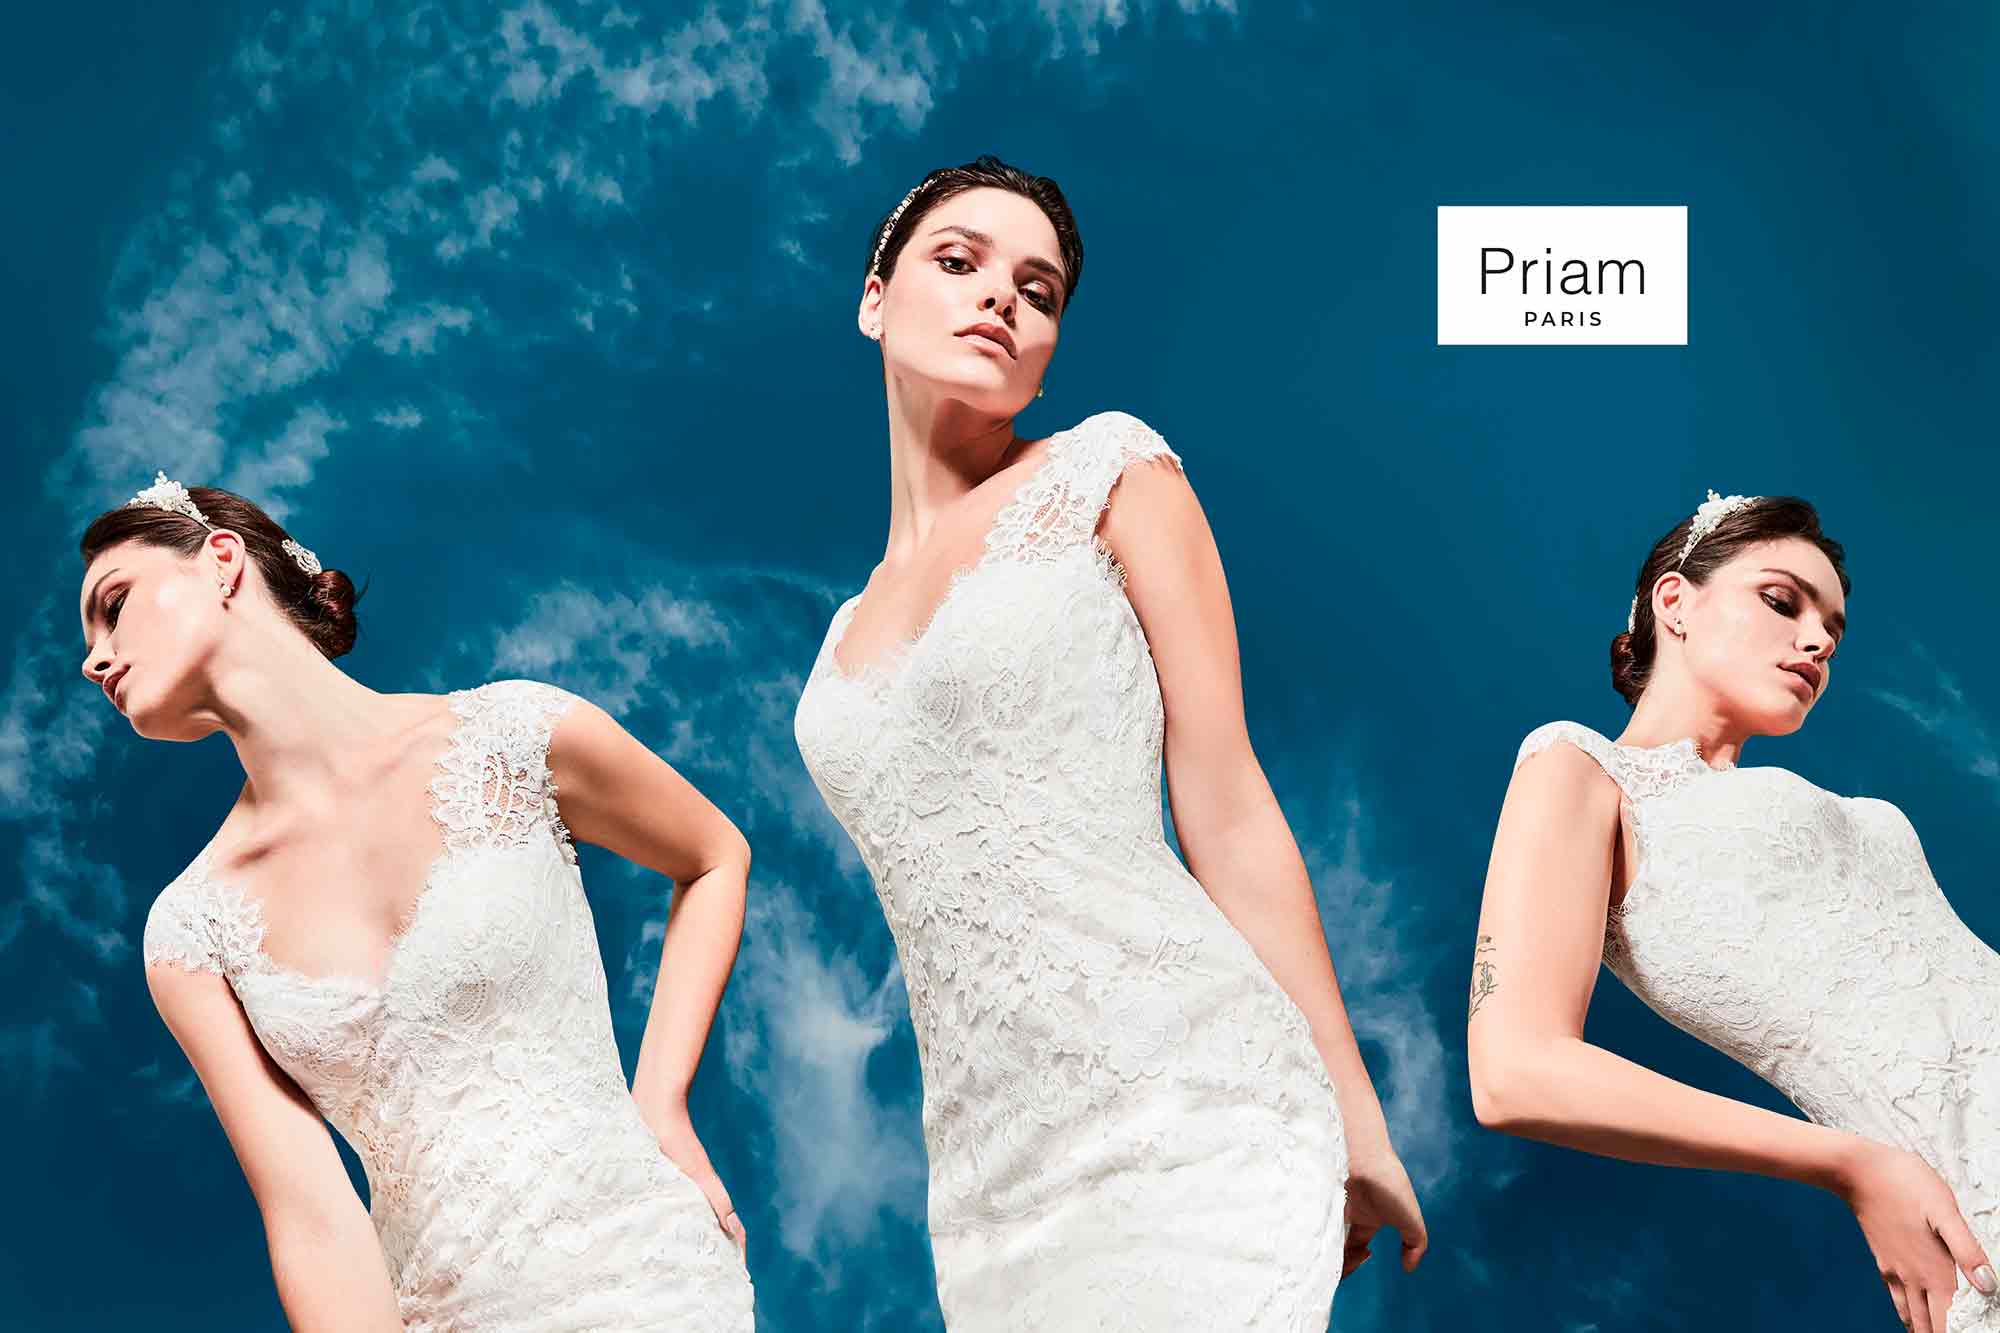 Les Gauchers Studio direction artistique pour les robes de mariées Priam